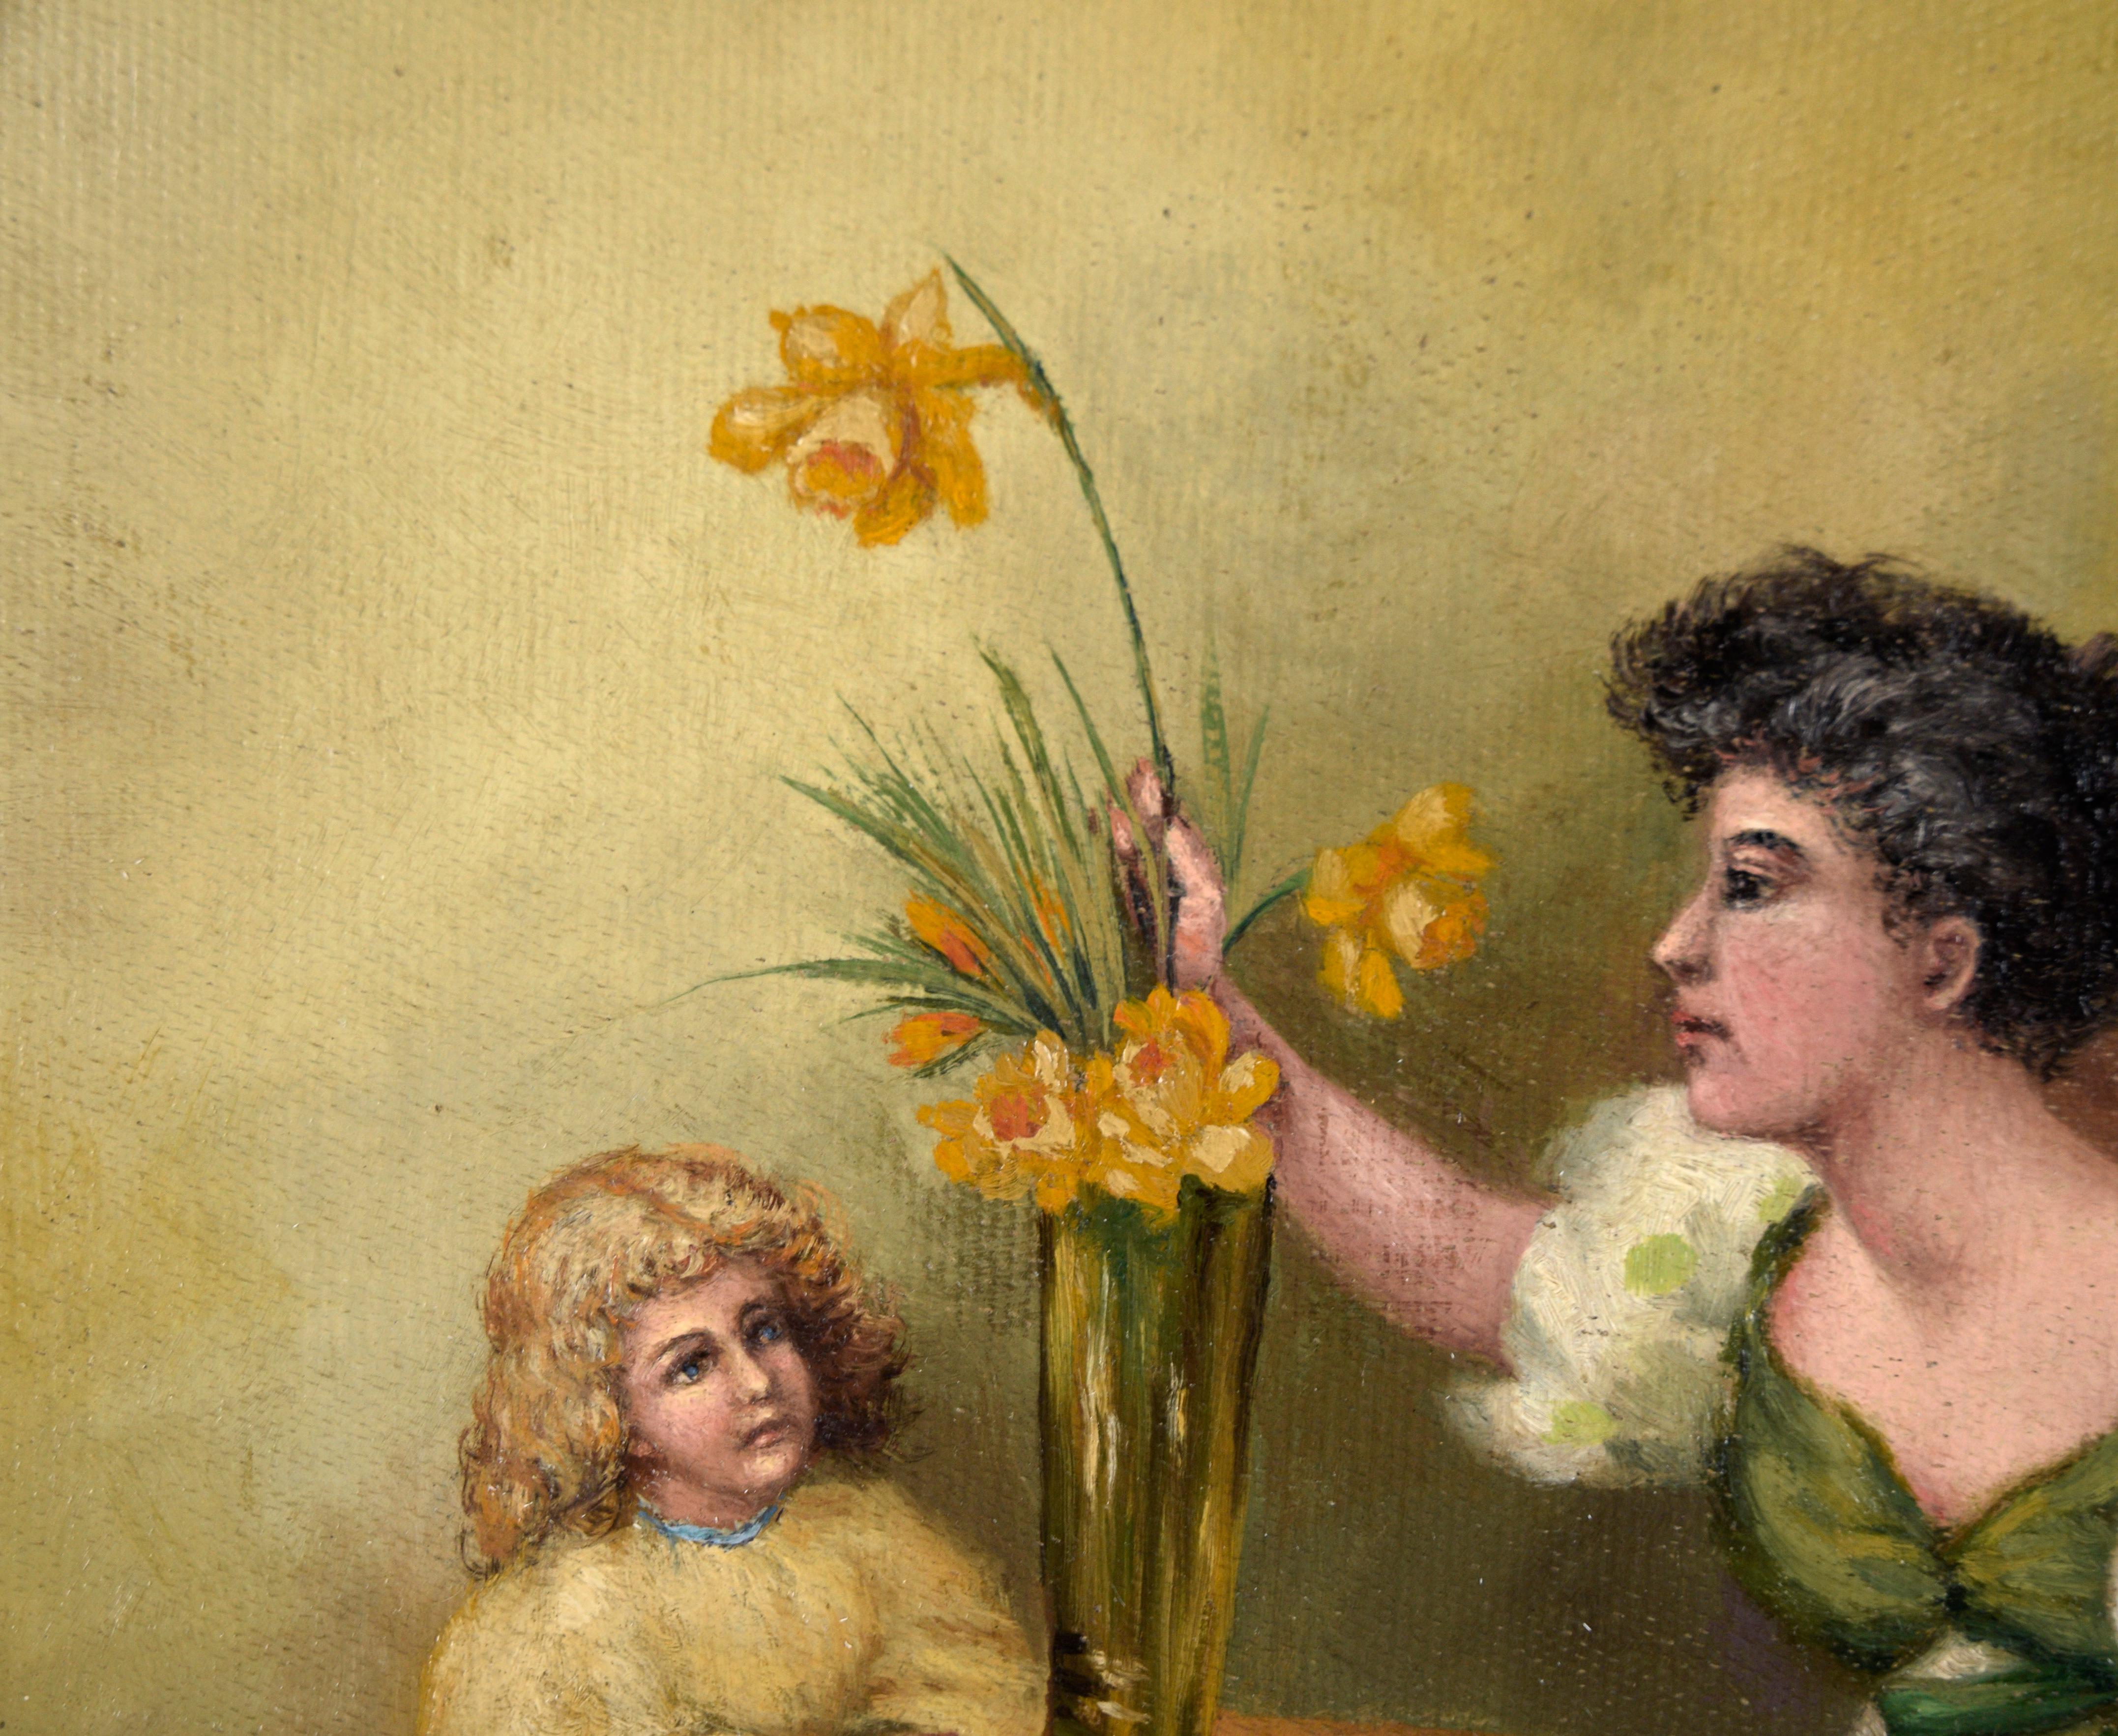 Mother and Daughter Arranging Daffodils in einer Vase – Öl auf Leinwand

Charmante Darstellung von Mutter und Tochter mit Narzissen von Lois Amelia Budlong-Phillips (Amerikanerin, 1857-1932). Eine Frau mit dunklem Haar trägt ein weiß-grünes Kleid